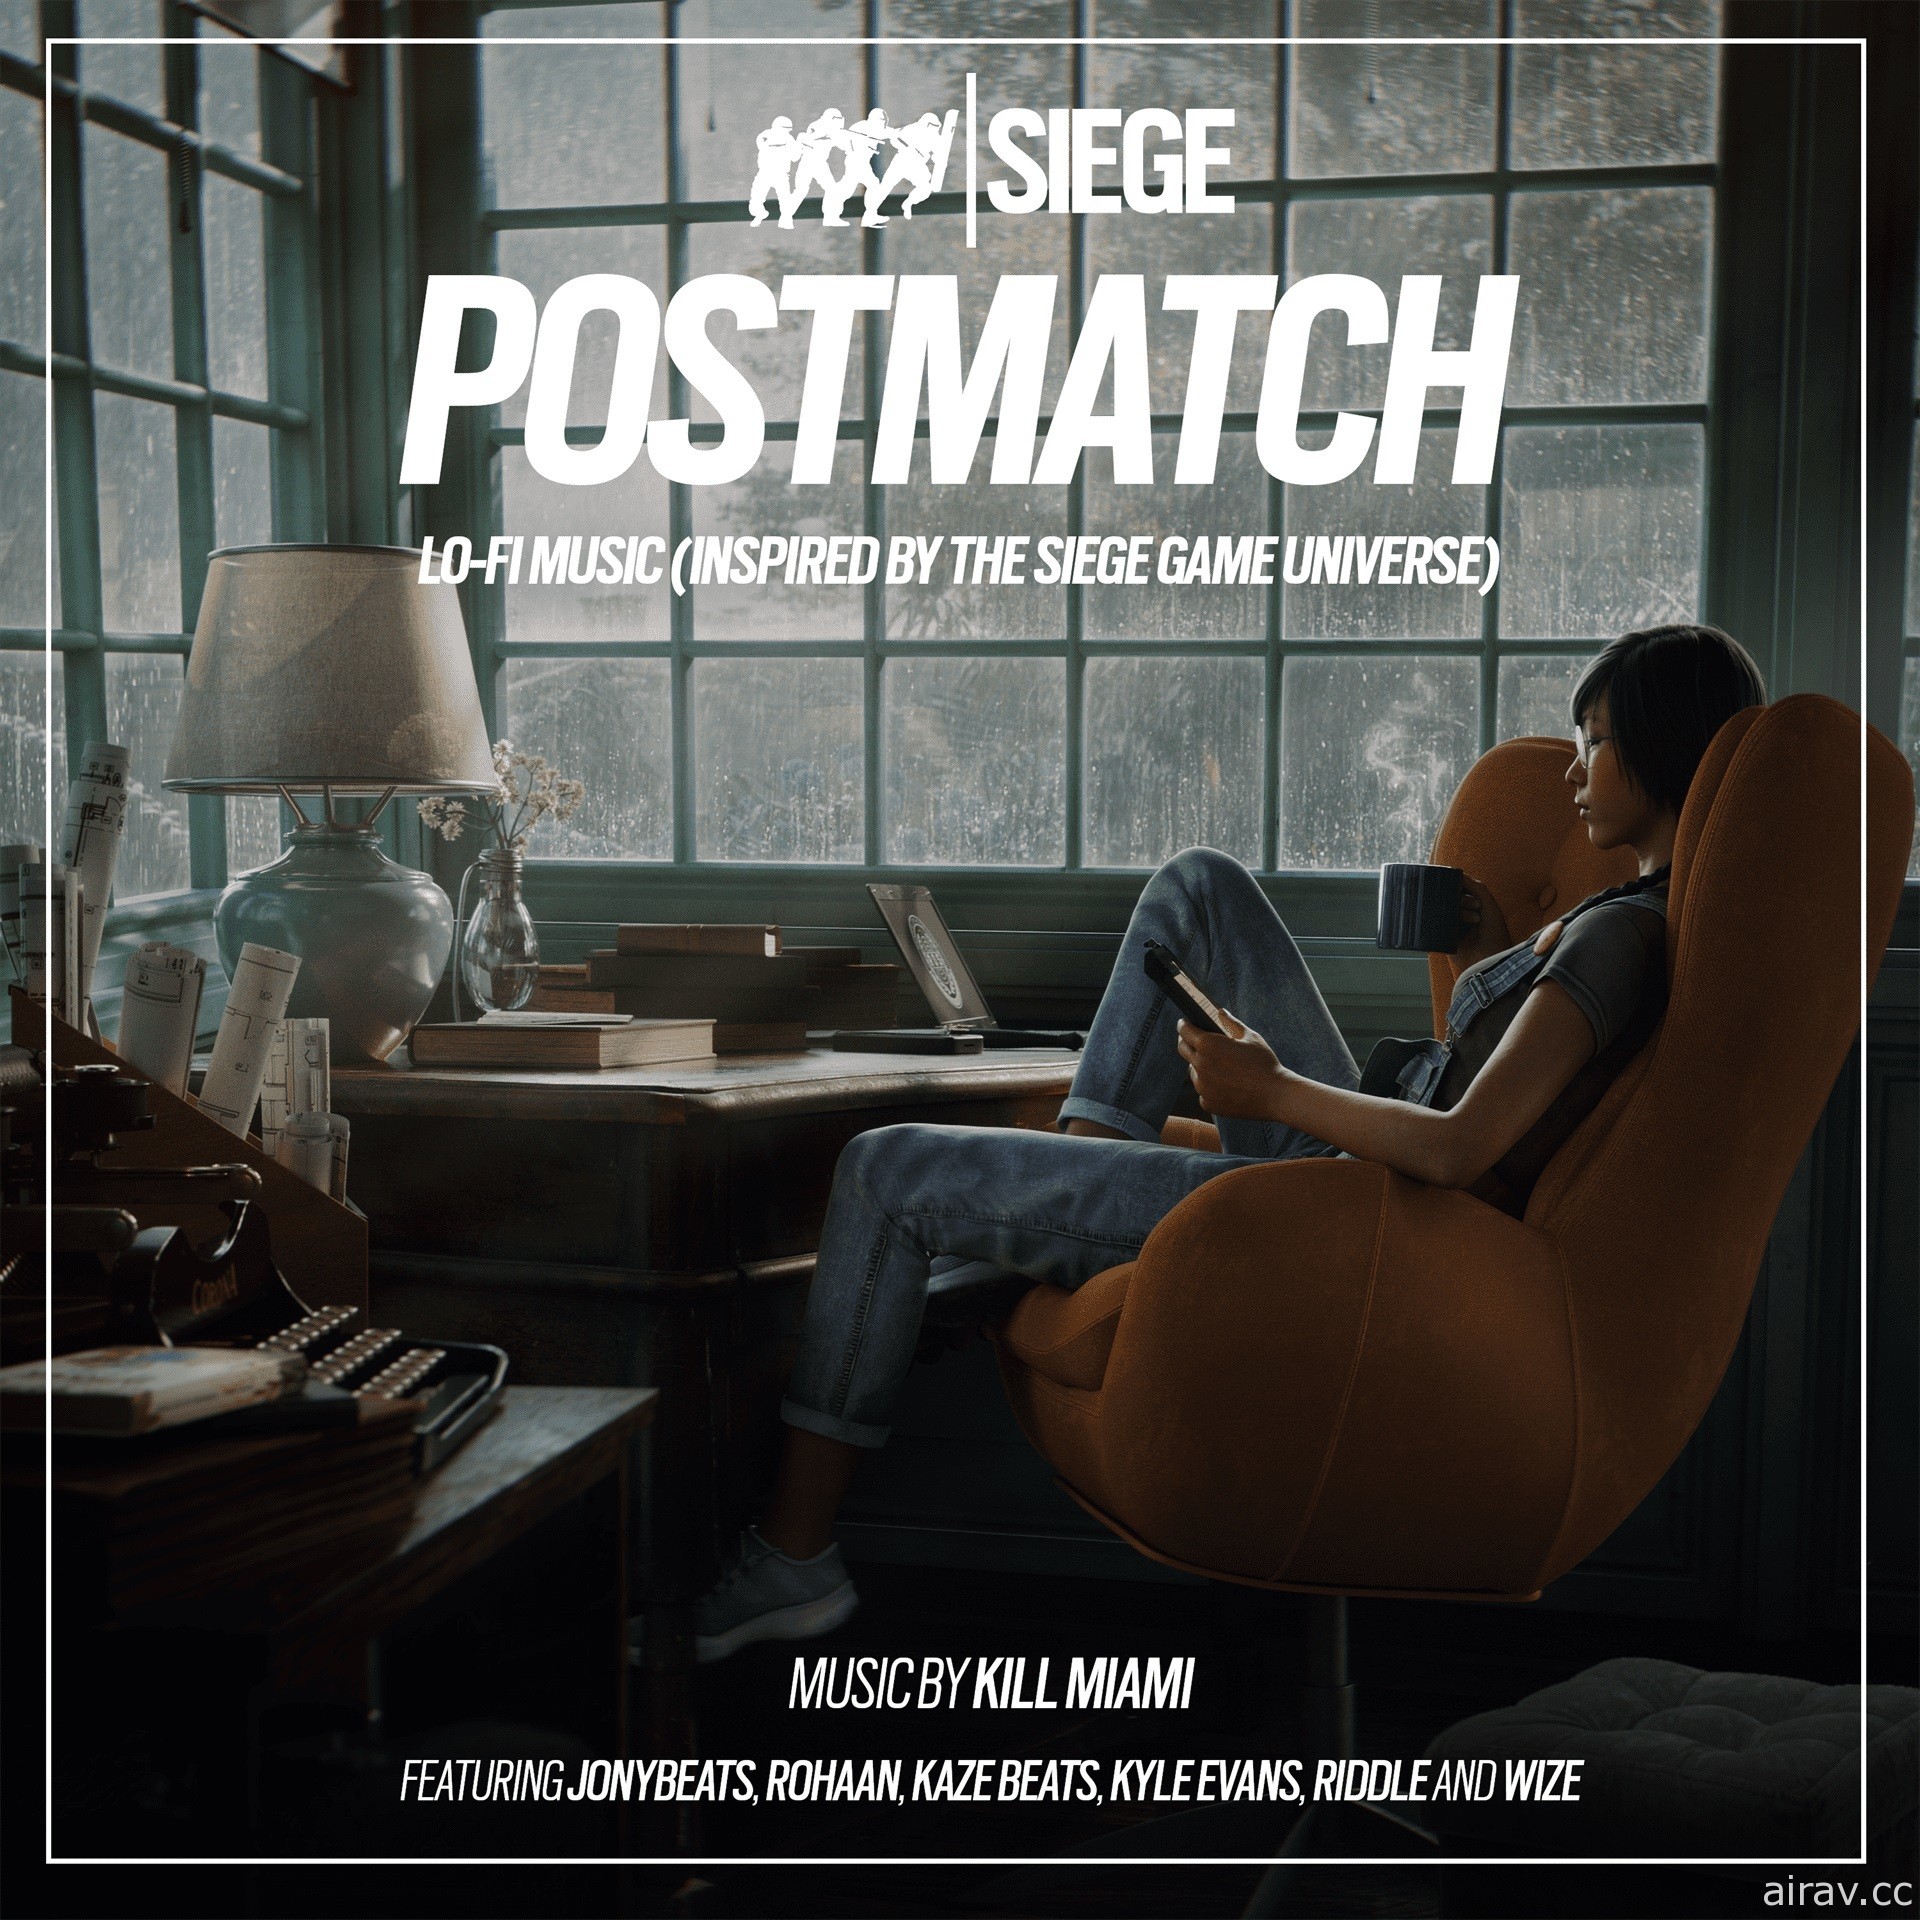 《虹彩六号：围攻行动》首张 Lo-Fi 音乐专辑“Postmatch”现已推出